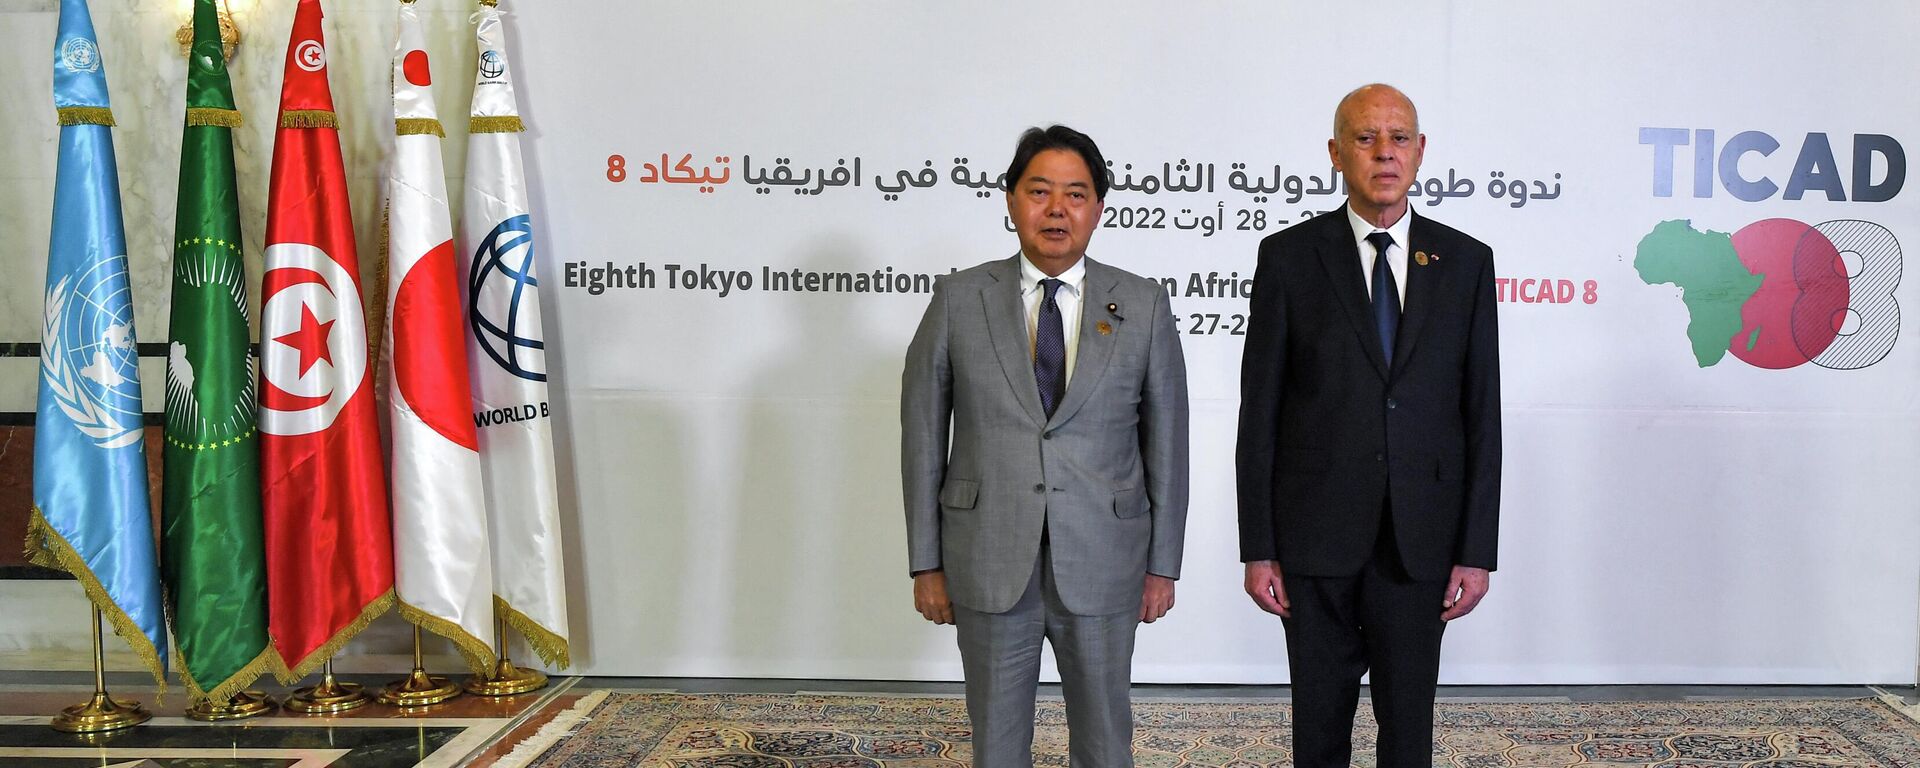 الرئيس التونسي قيس سعيد ووزير الخارجية الياباني يوشيماسا هاياشي خلال قمة طوكيو الدولية لتنمية أفريقيا تيكاد 8 - سبوتنيك عربي, 1920, 27.08.2022